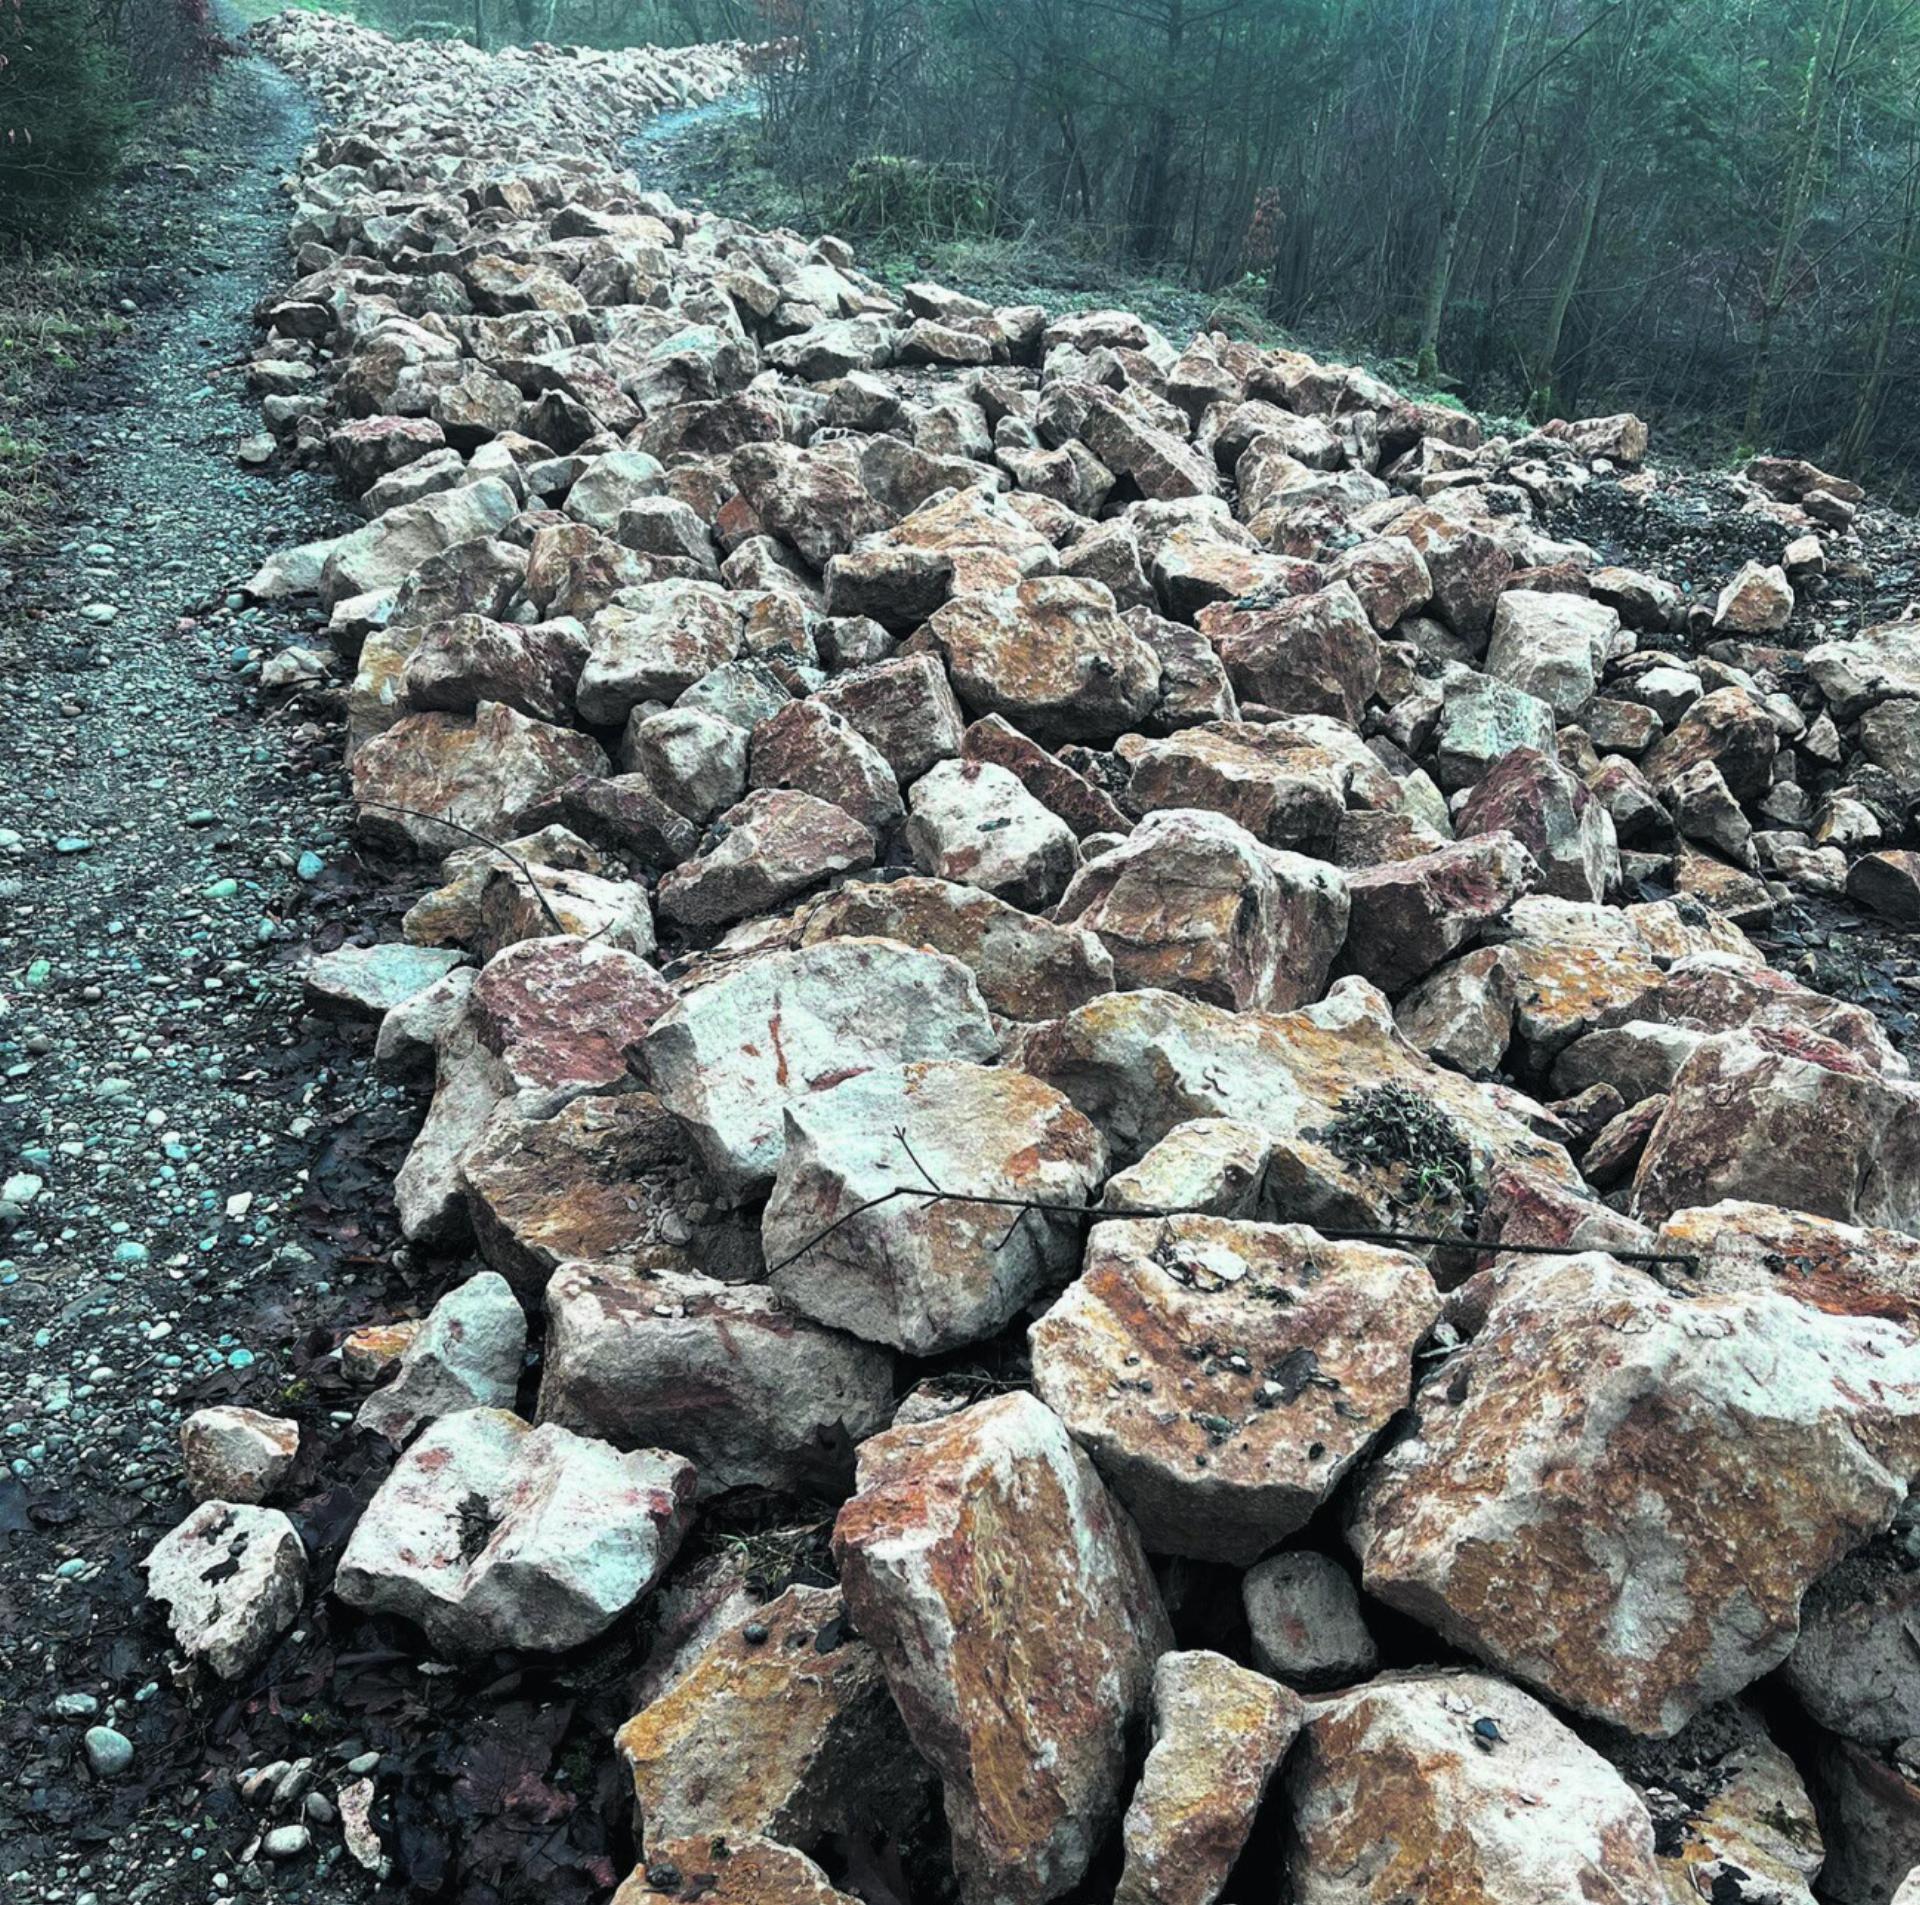 Die Felsbrocken werden voraussichtlich im Januar mit einem mobilen Steinbrecher zerkleinert. Wegen des Wetters kam es zu Verzögerungen. Foto: Valentin Zumsteg